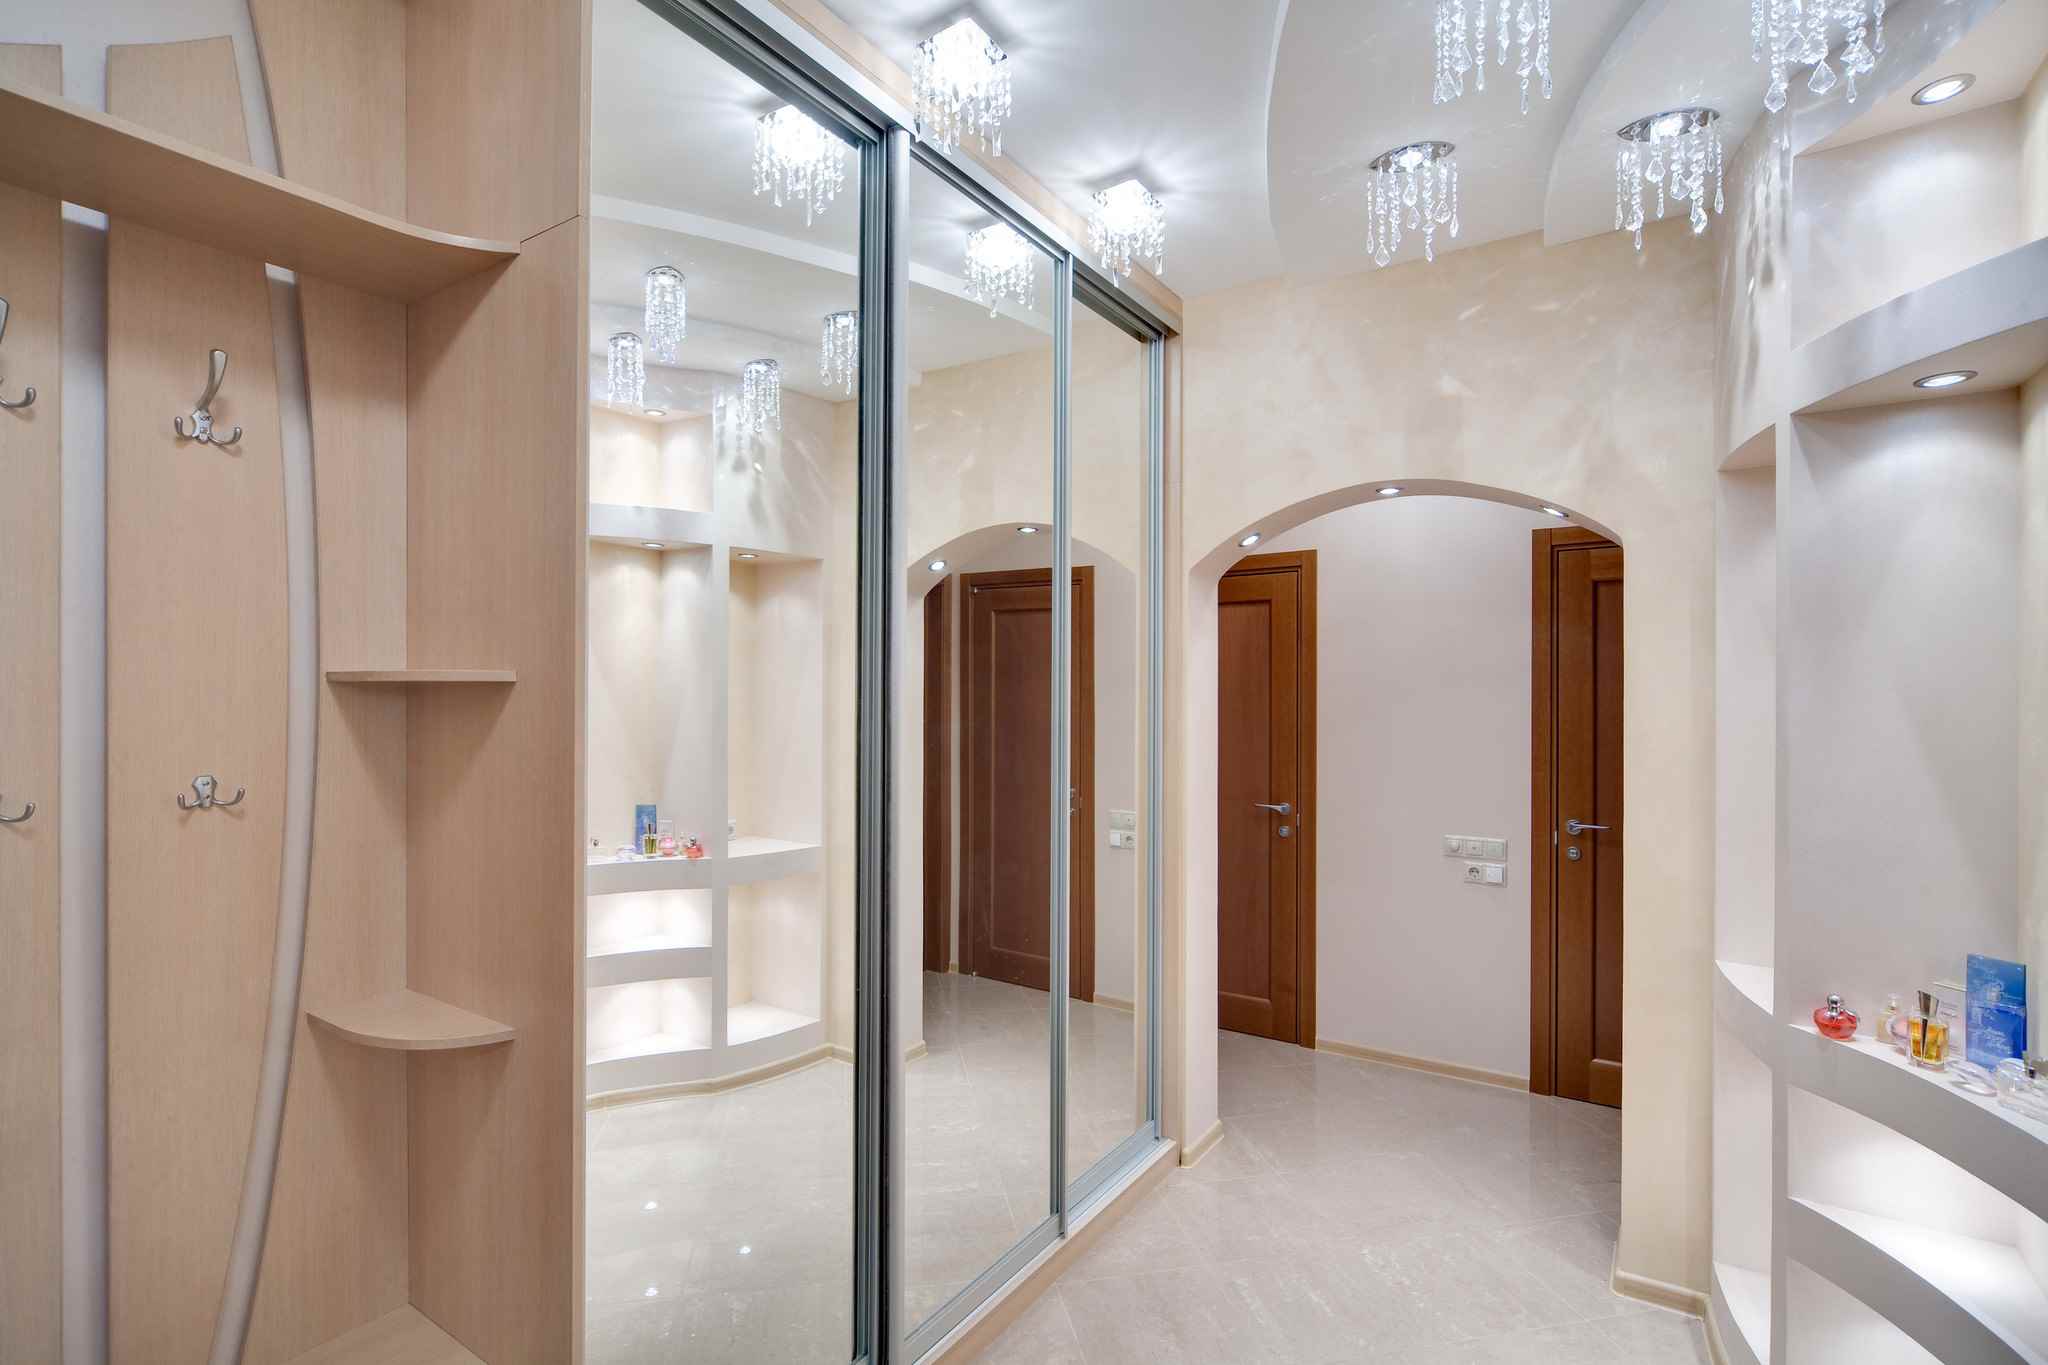 un exemple d'un style inhabituel d'un couloir avec des miroirs